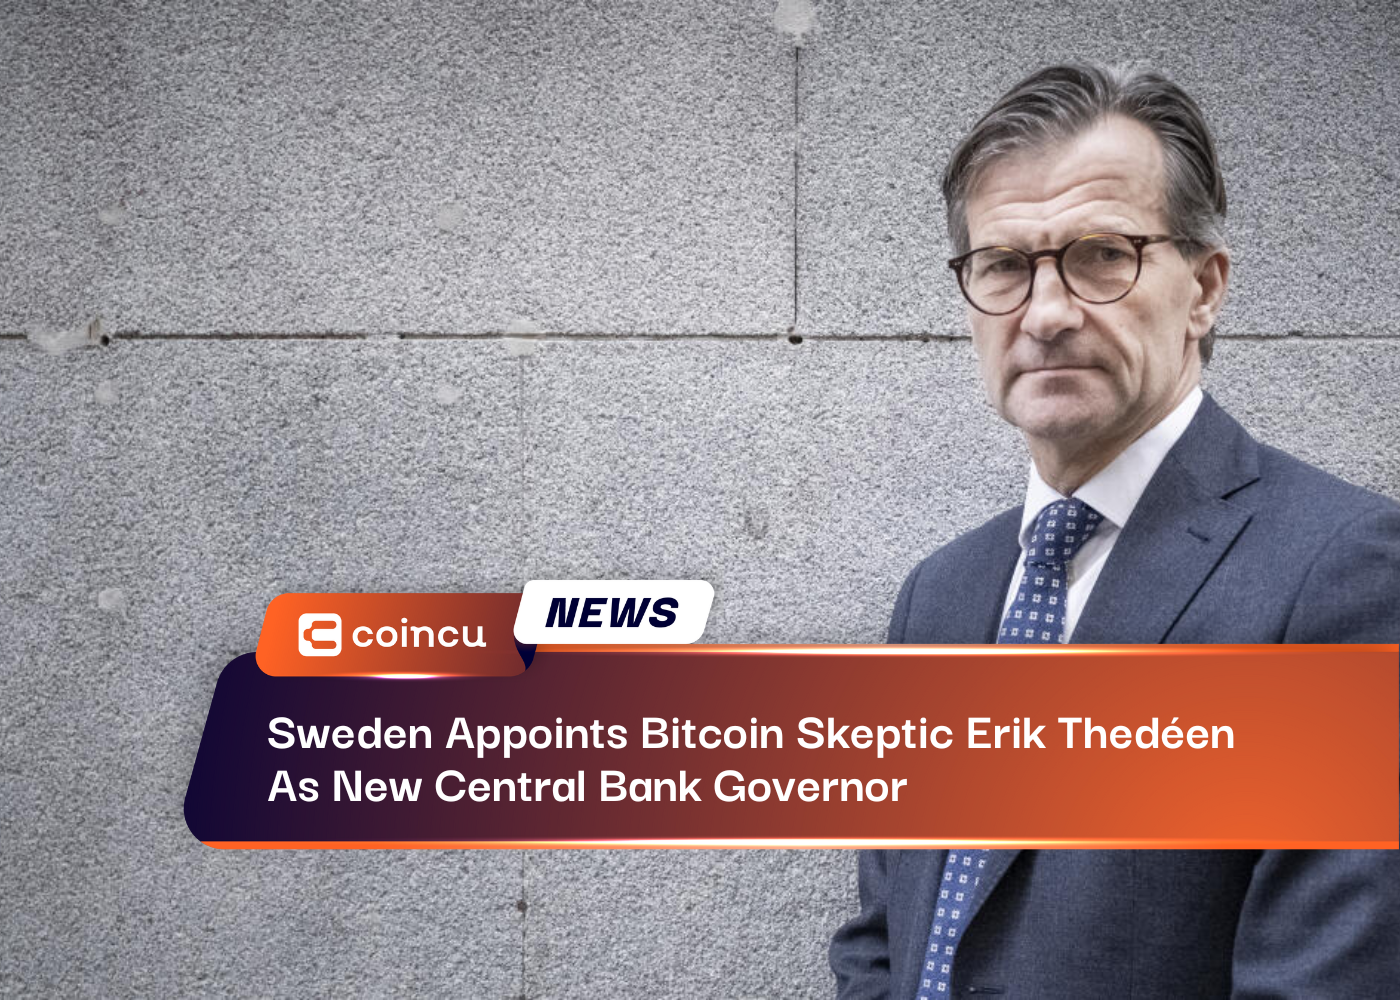 स्वीडन ने बिटकॉइन संशयवादी एरिक थेडेन को नया सेंट्रल बैंक गवर्नर नियुक्त किया